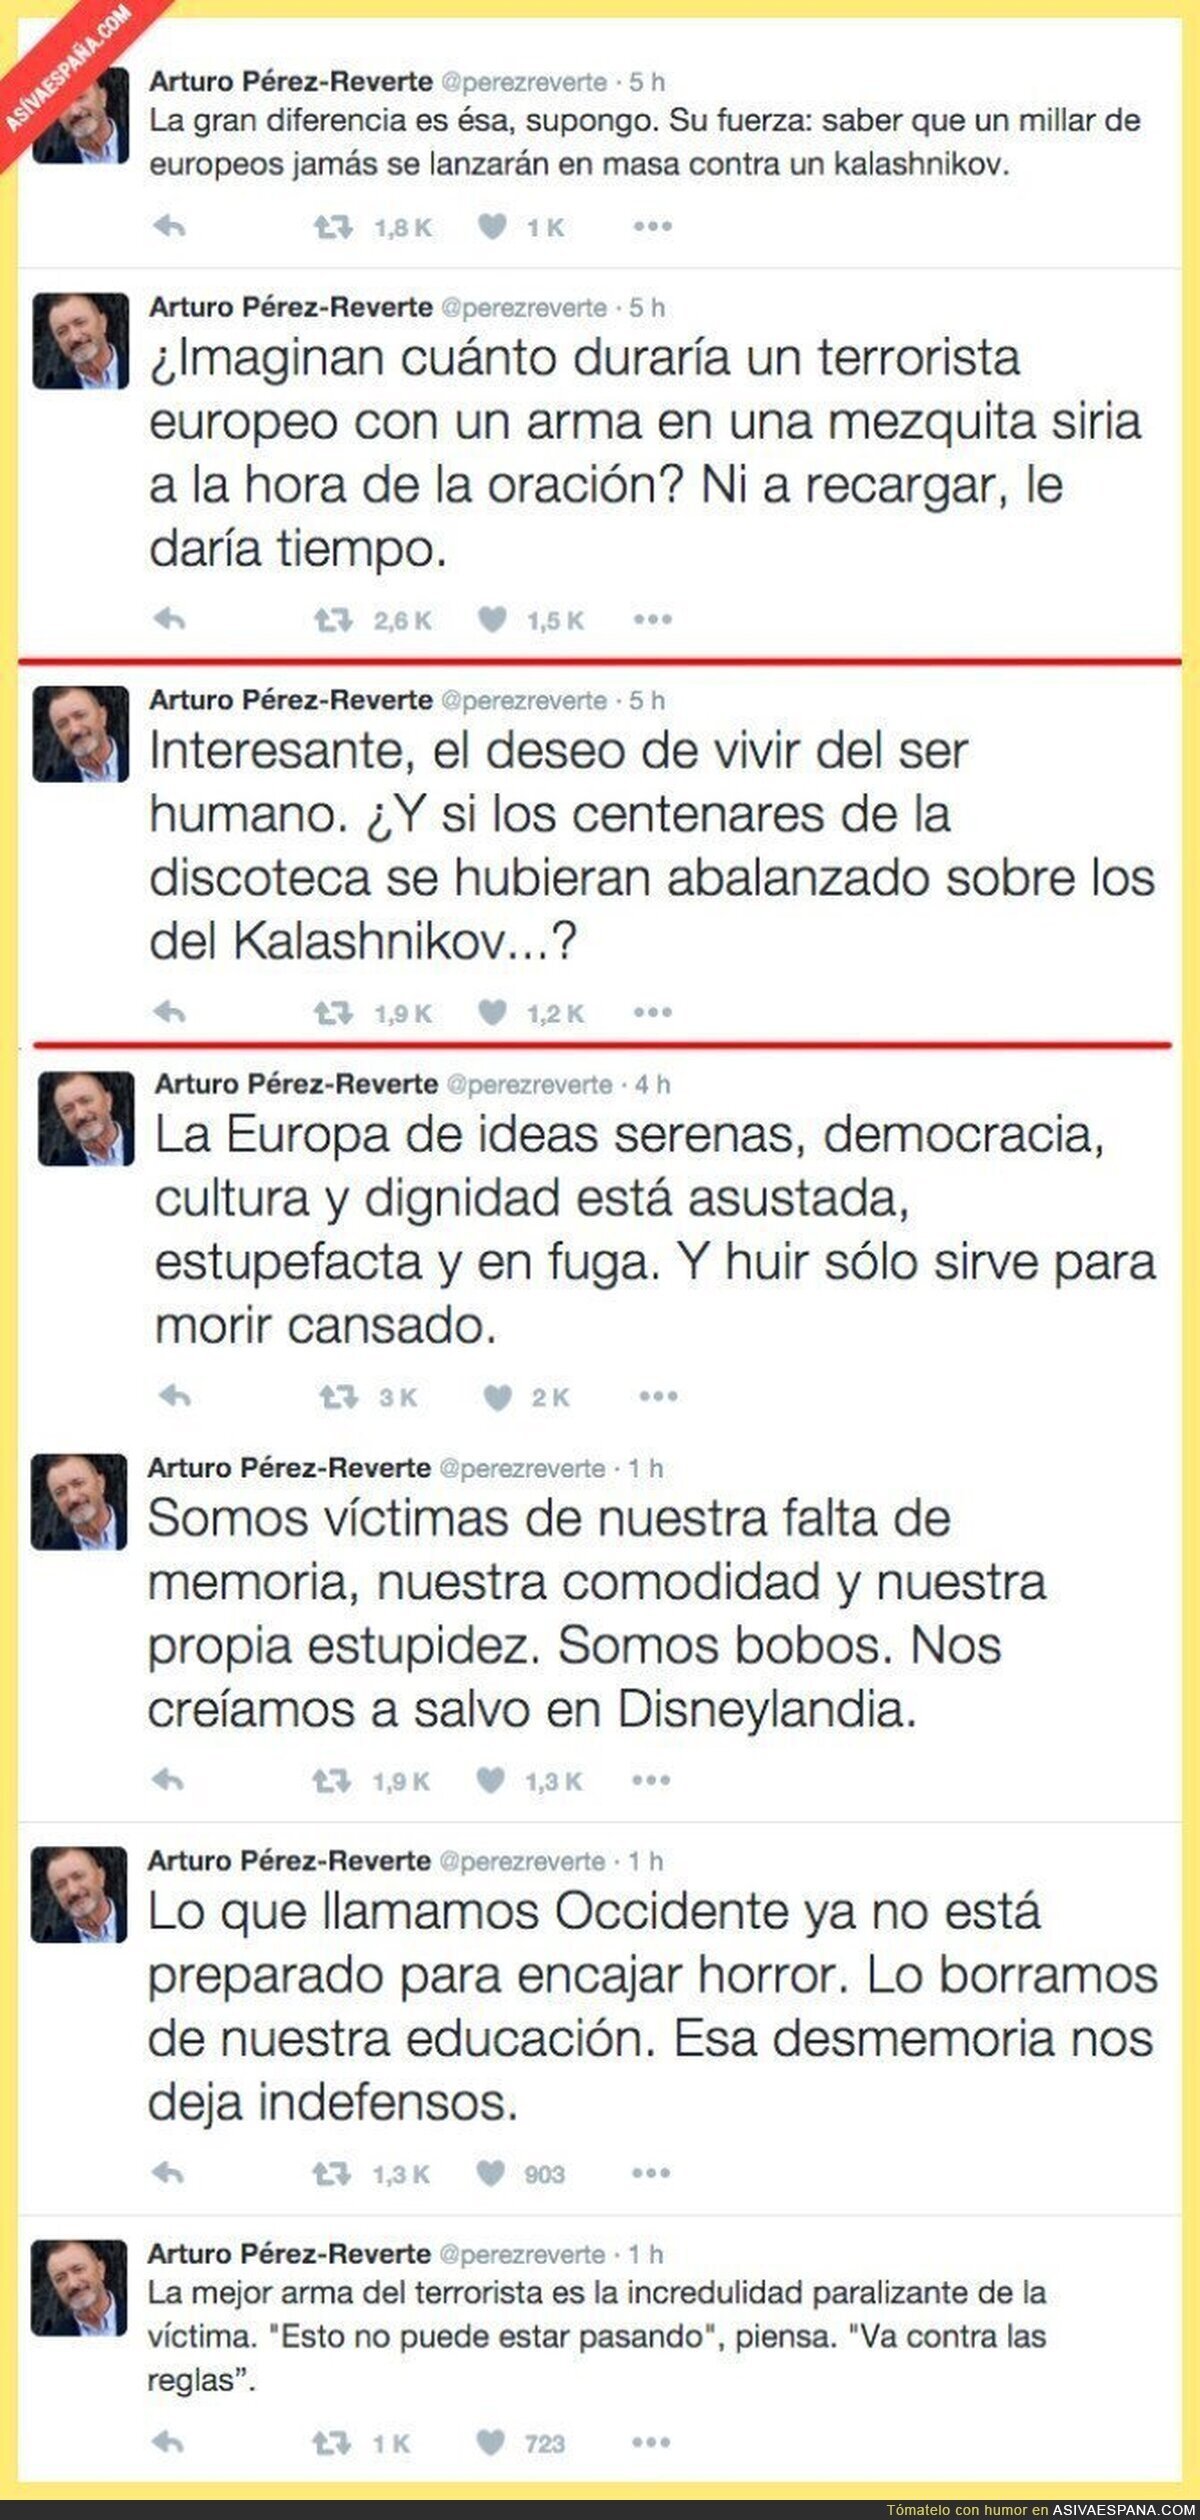 Las polémicas reflexiones de Arturo Pérez-Reverte en Twitter